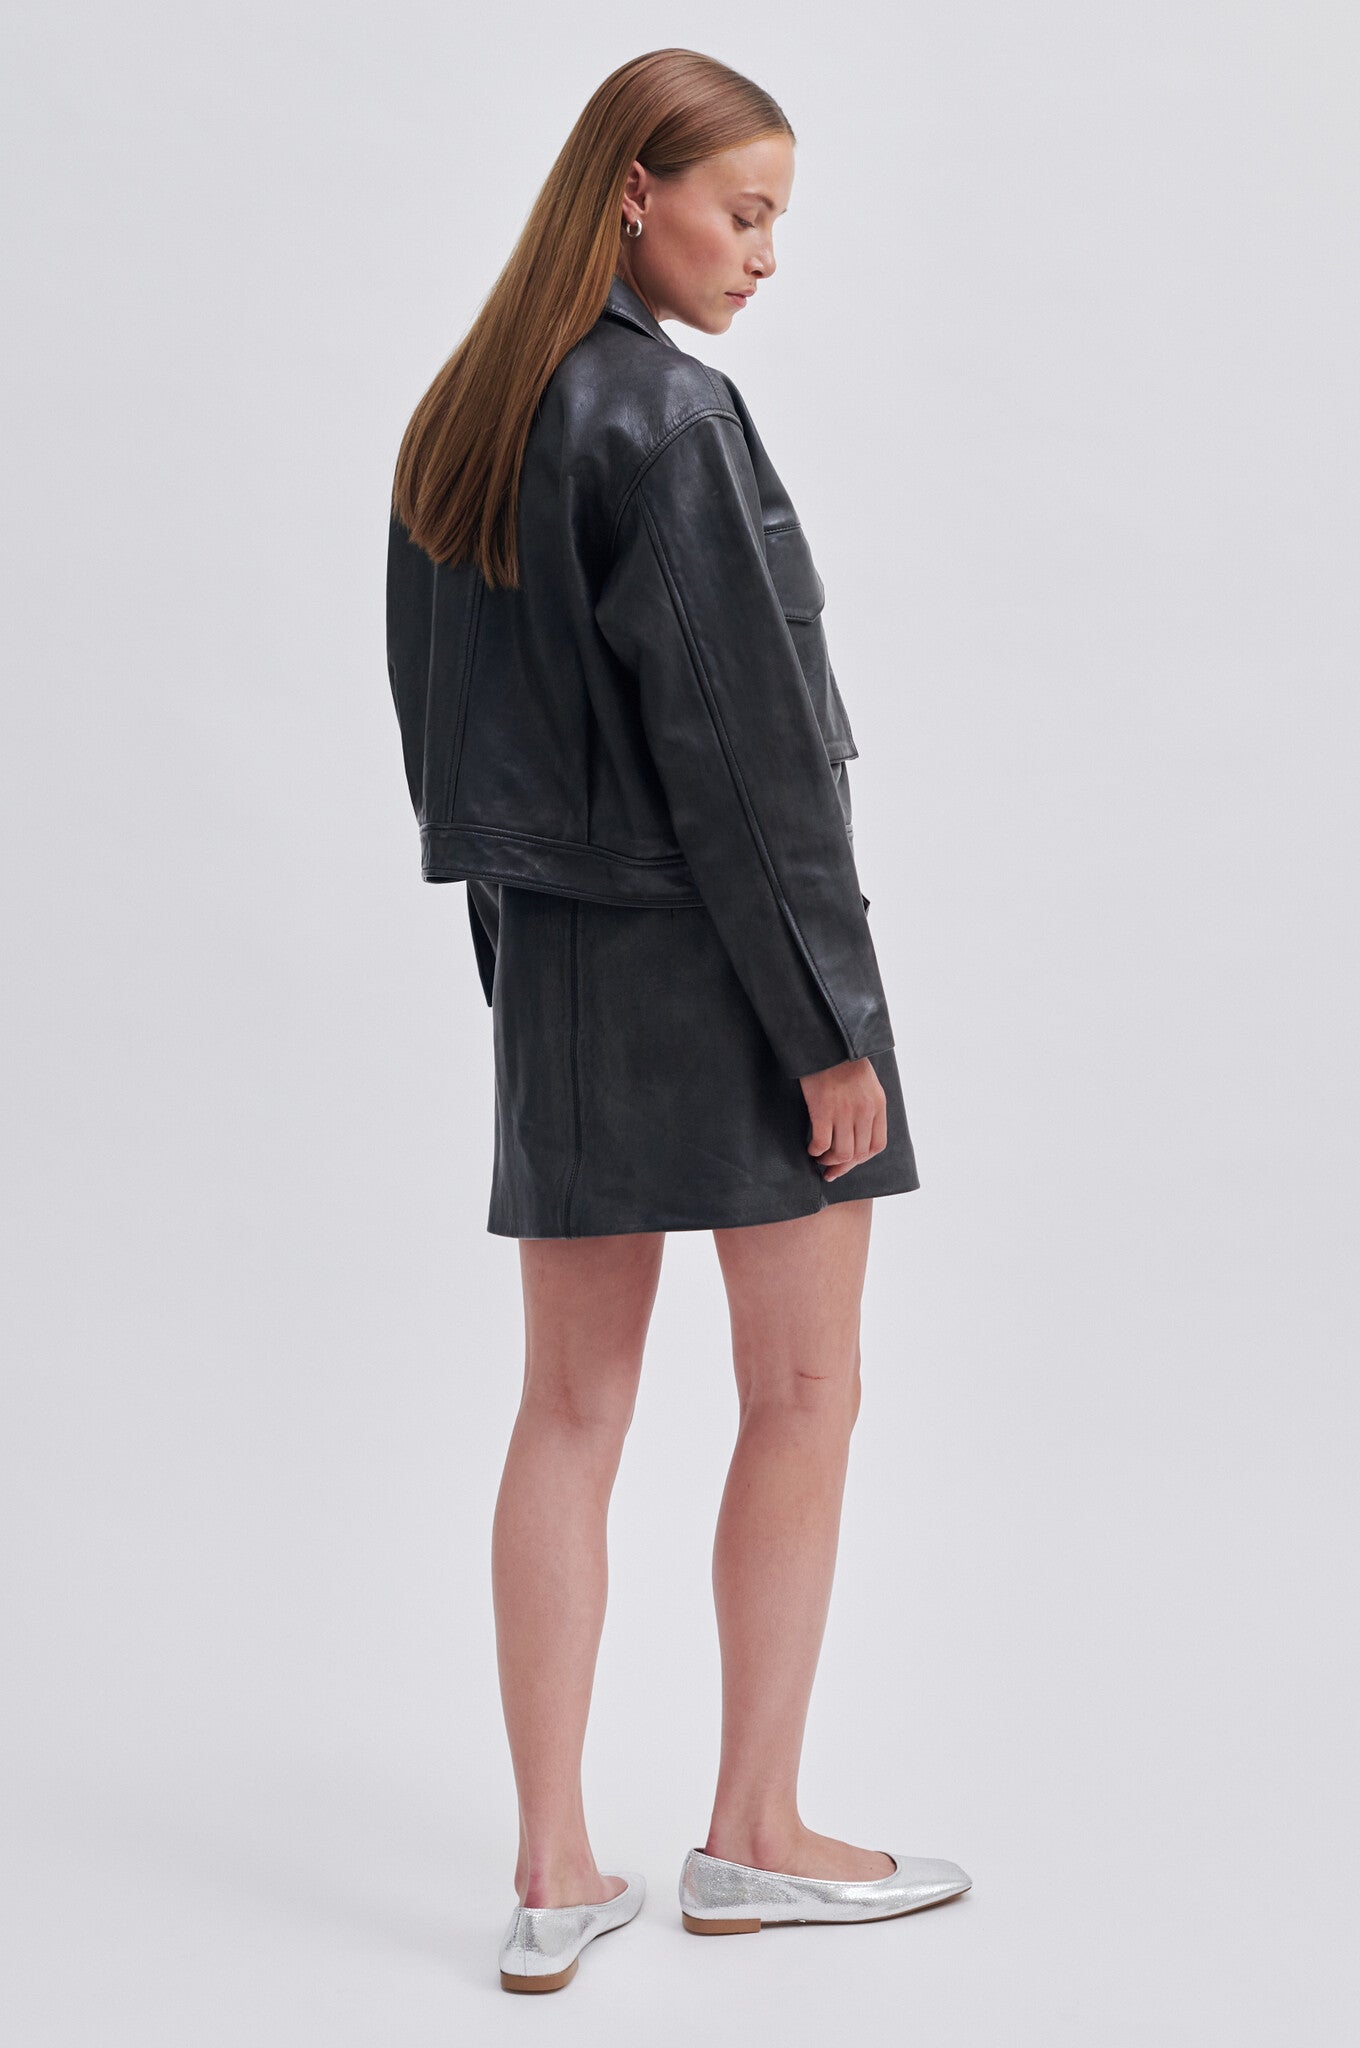 Lato Leather Jacket - Black